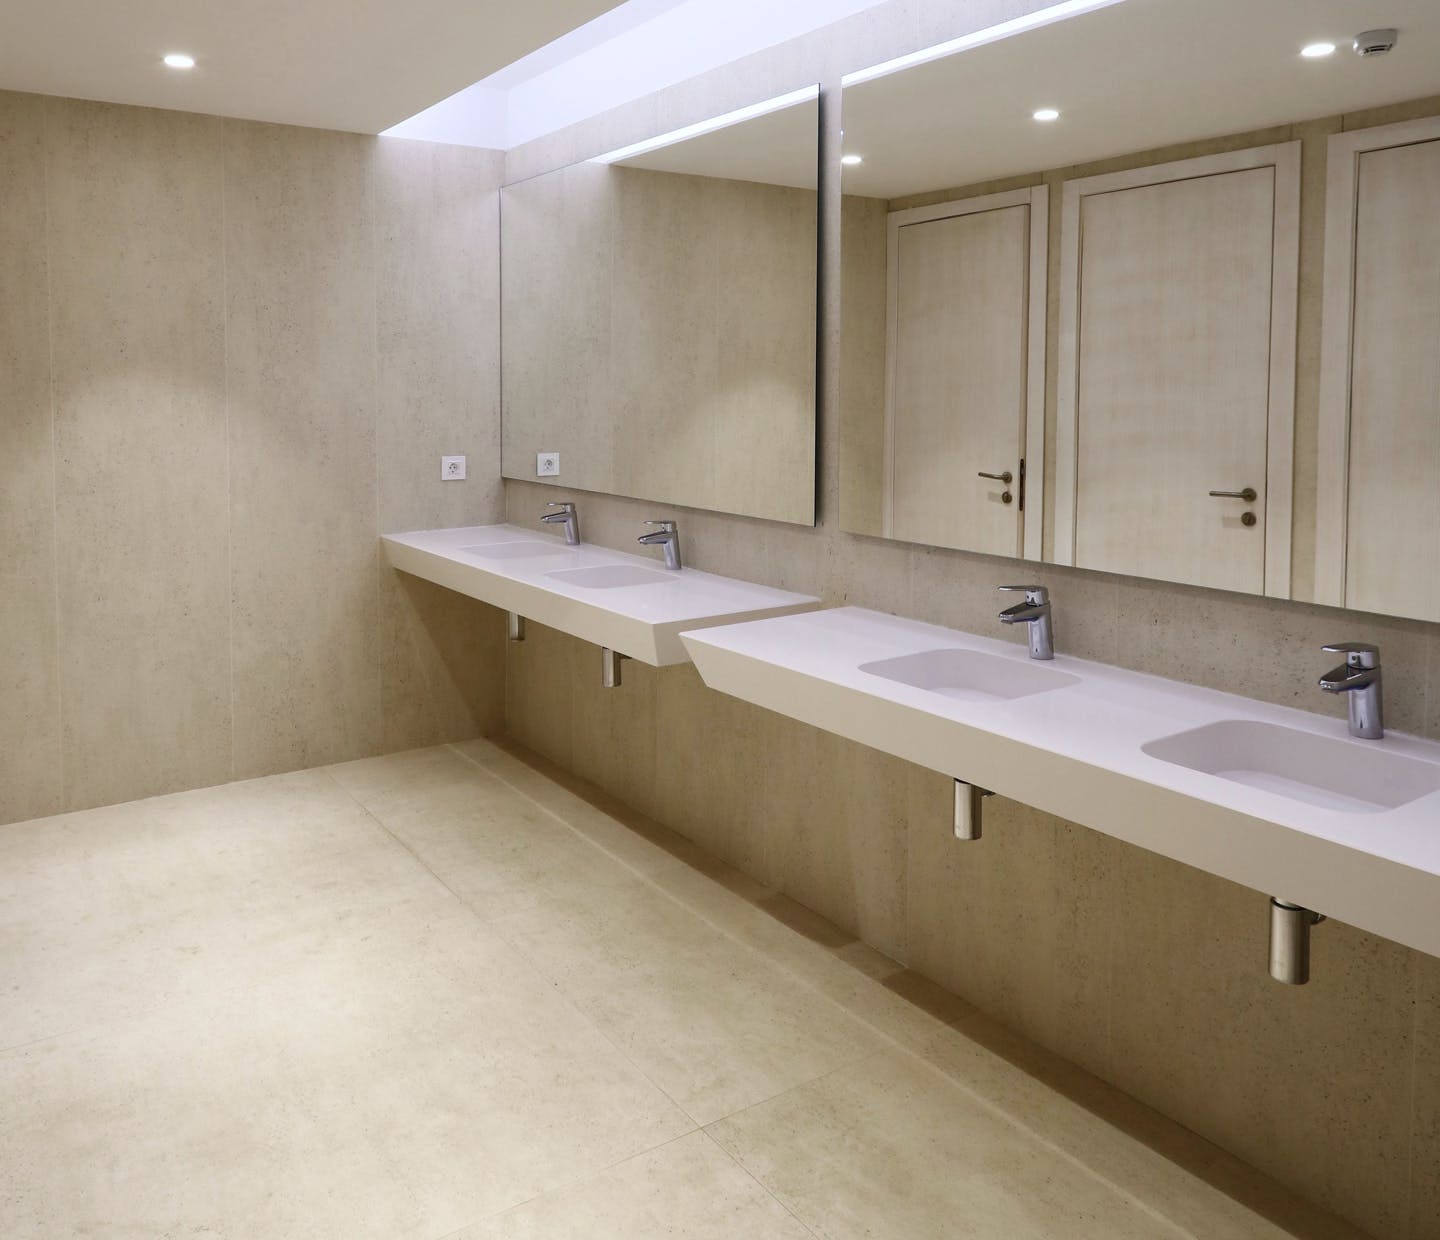 Designer bathrooms with unique materials - Soluciones Integrales 35